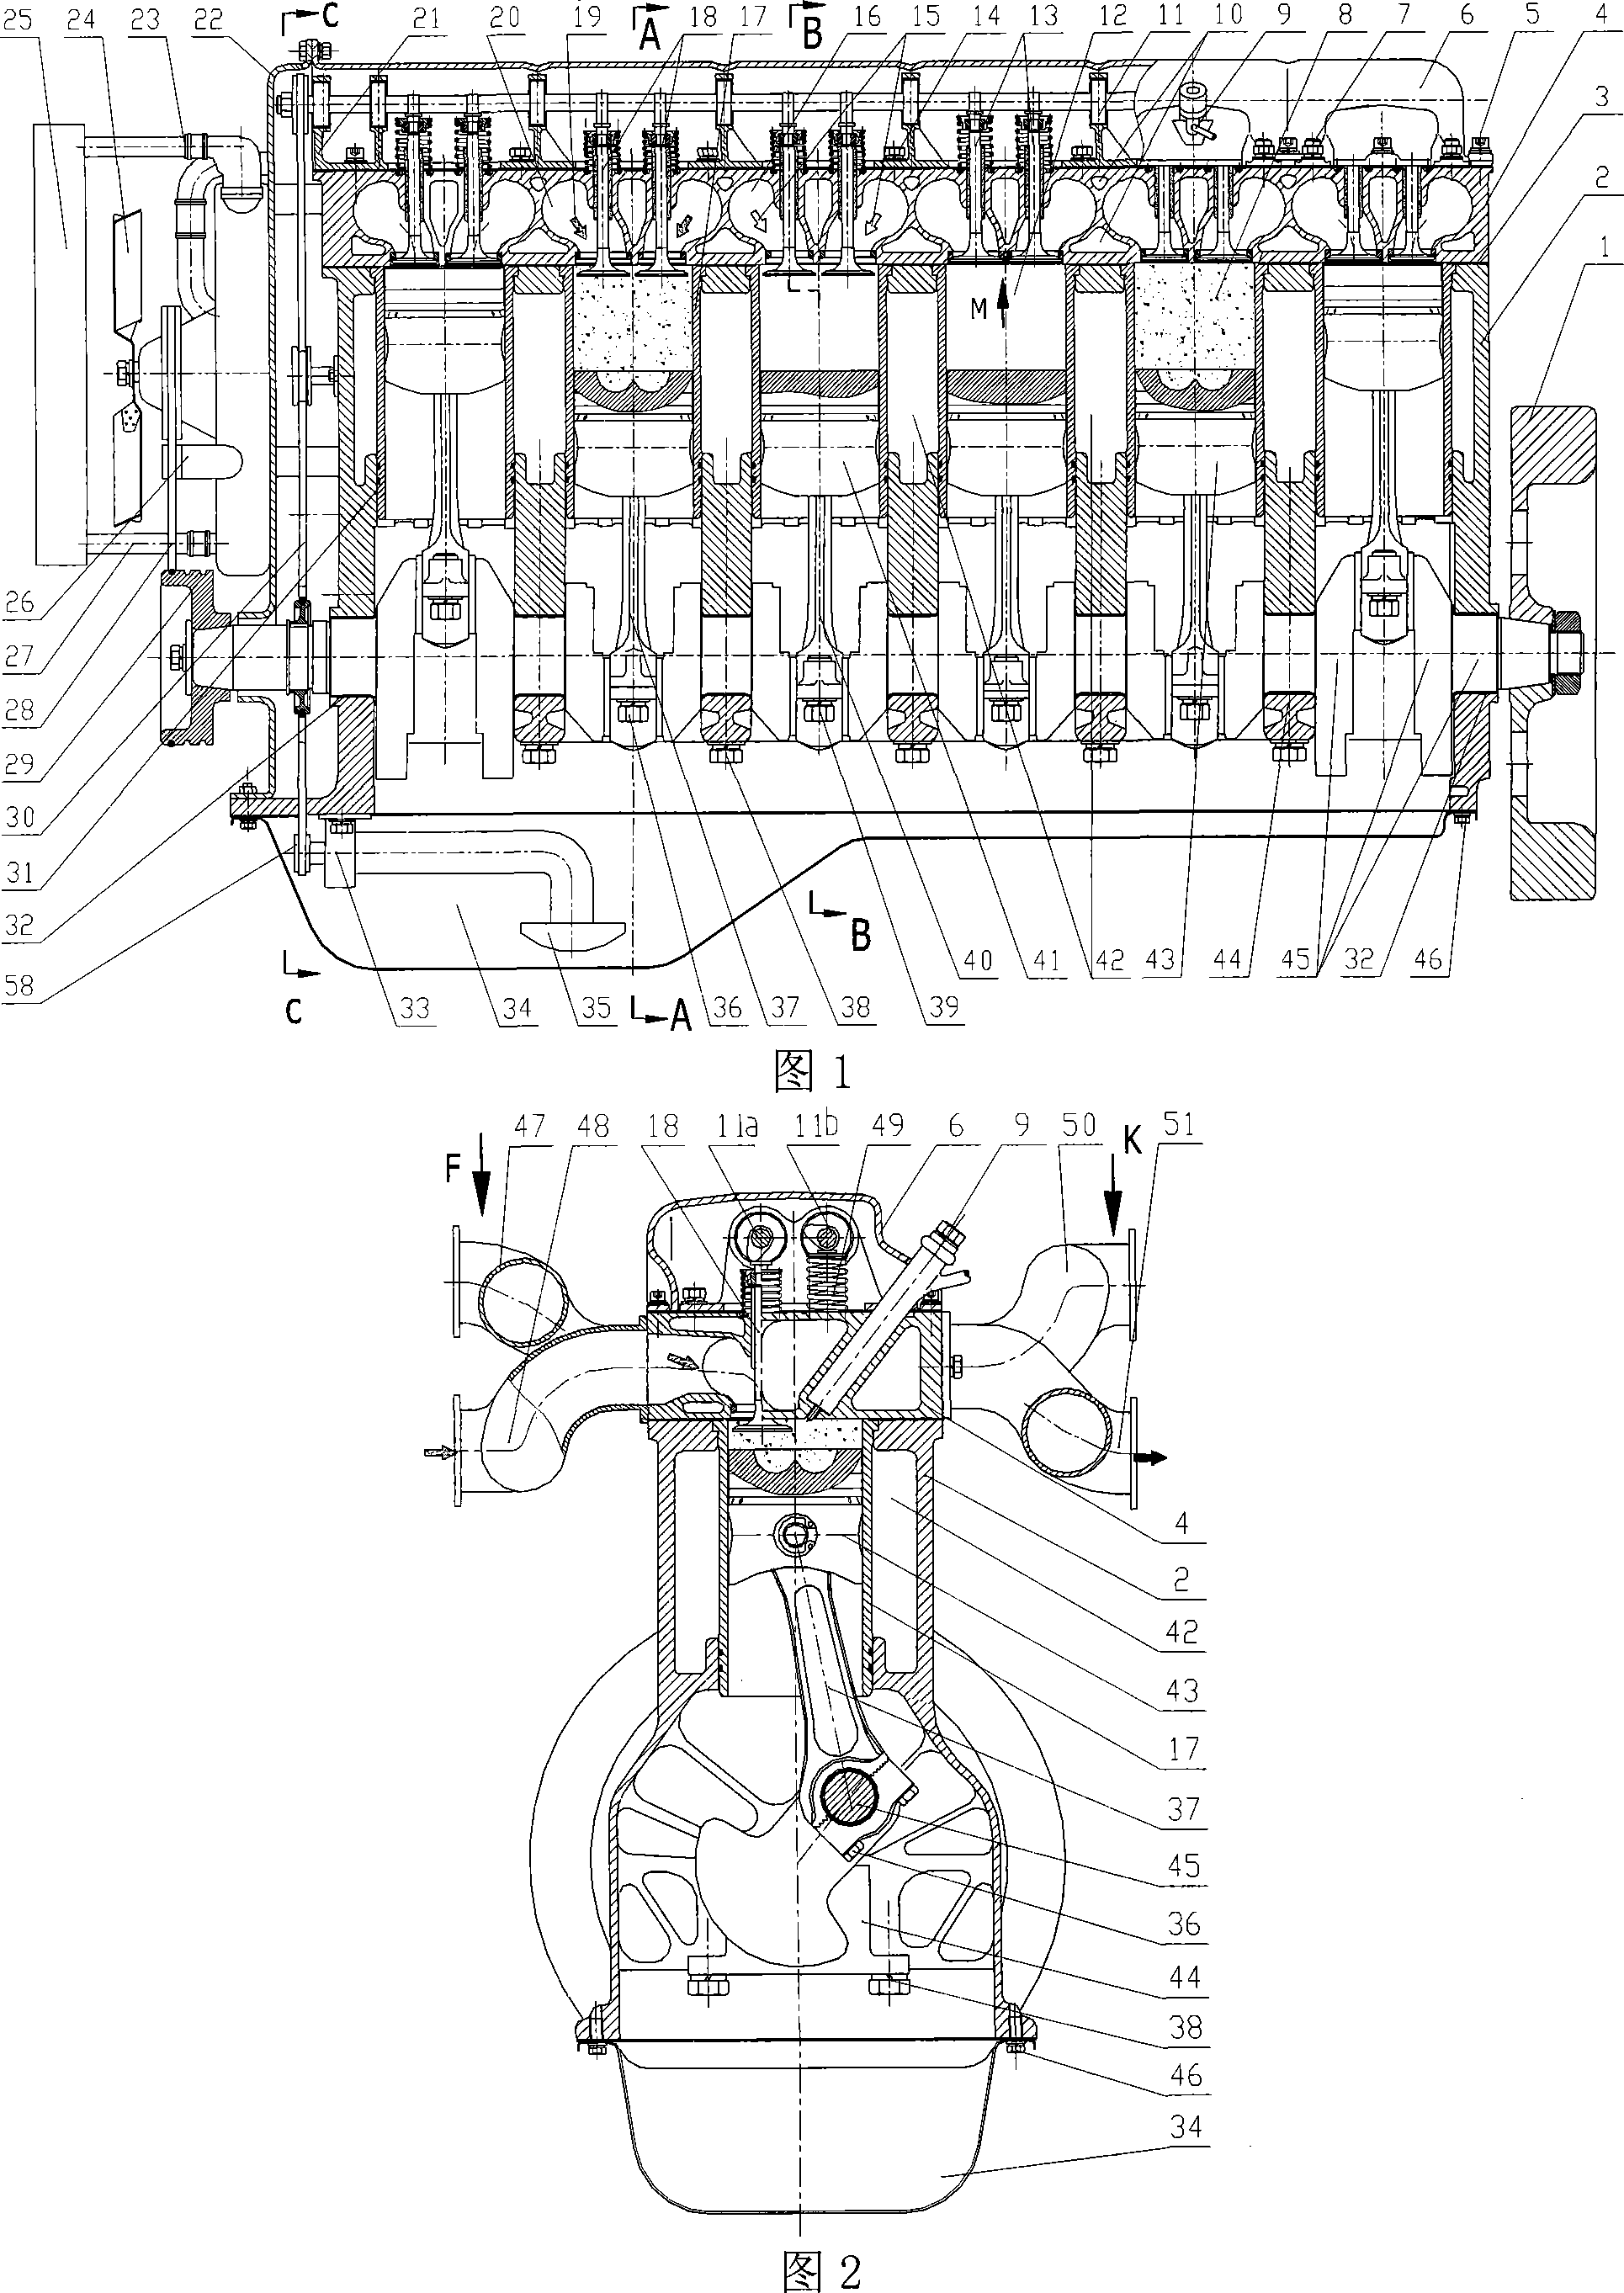 Self-driven integral air compressor